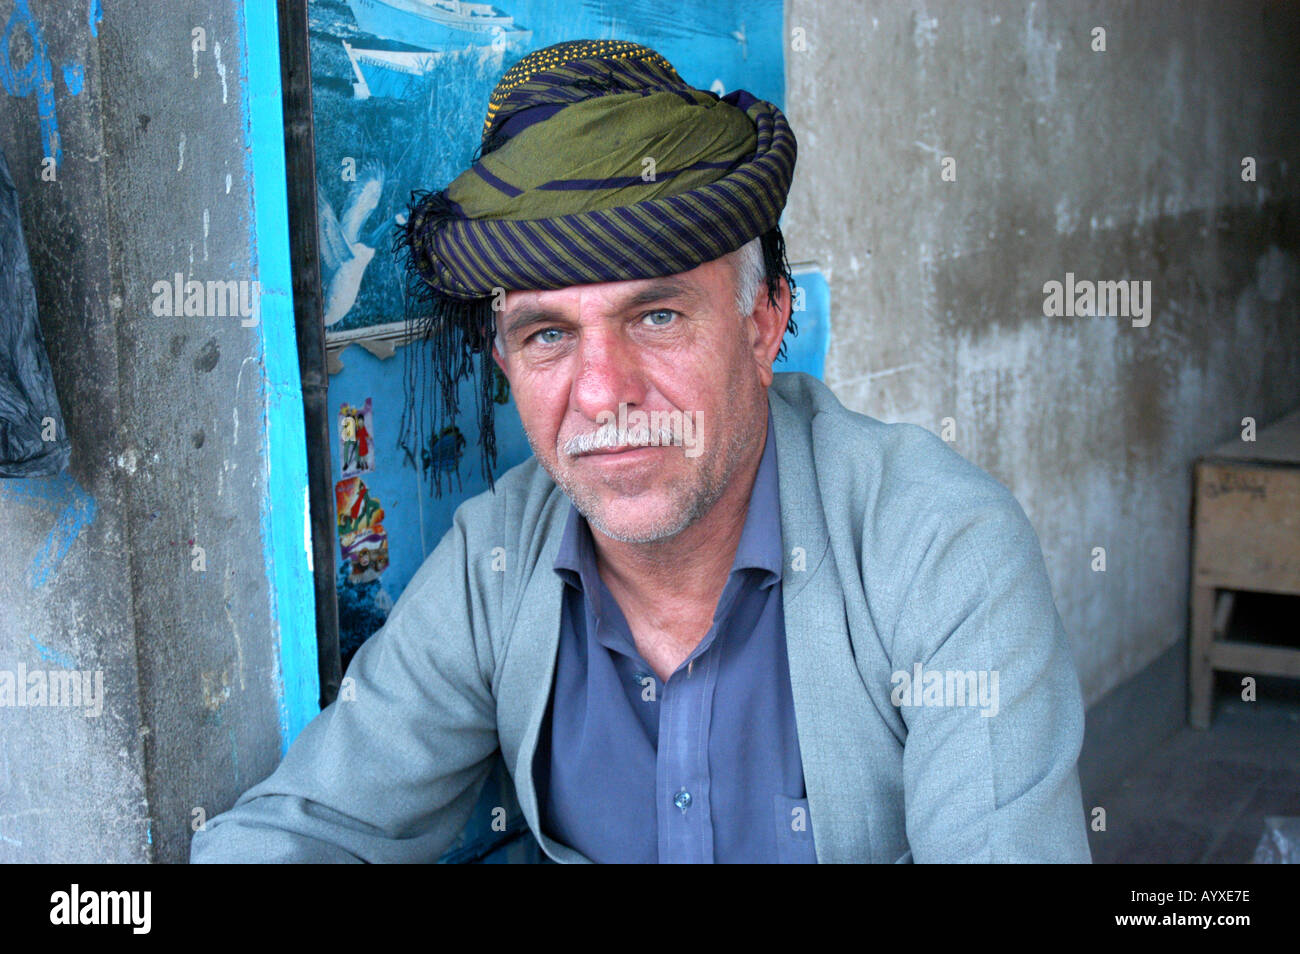 Porträt des mittleren Alter kurdischer Mann Halabja im Nordirak Stockfoto